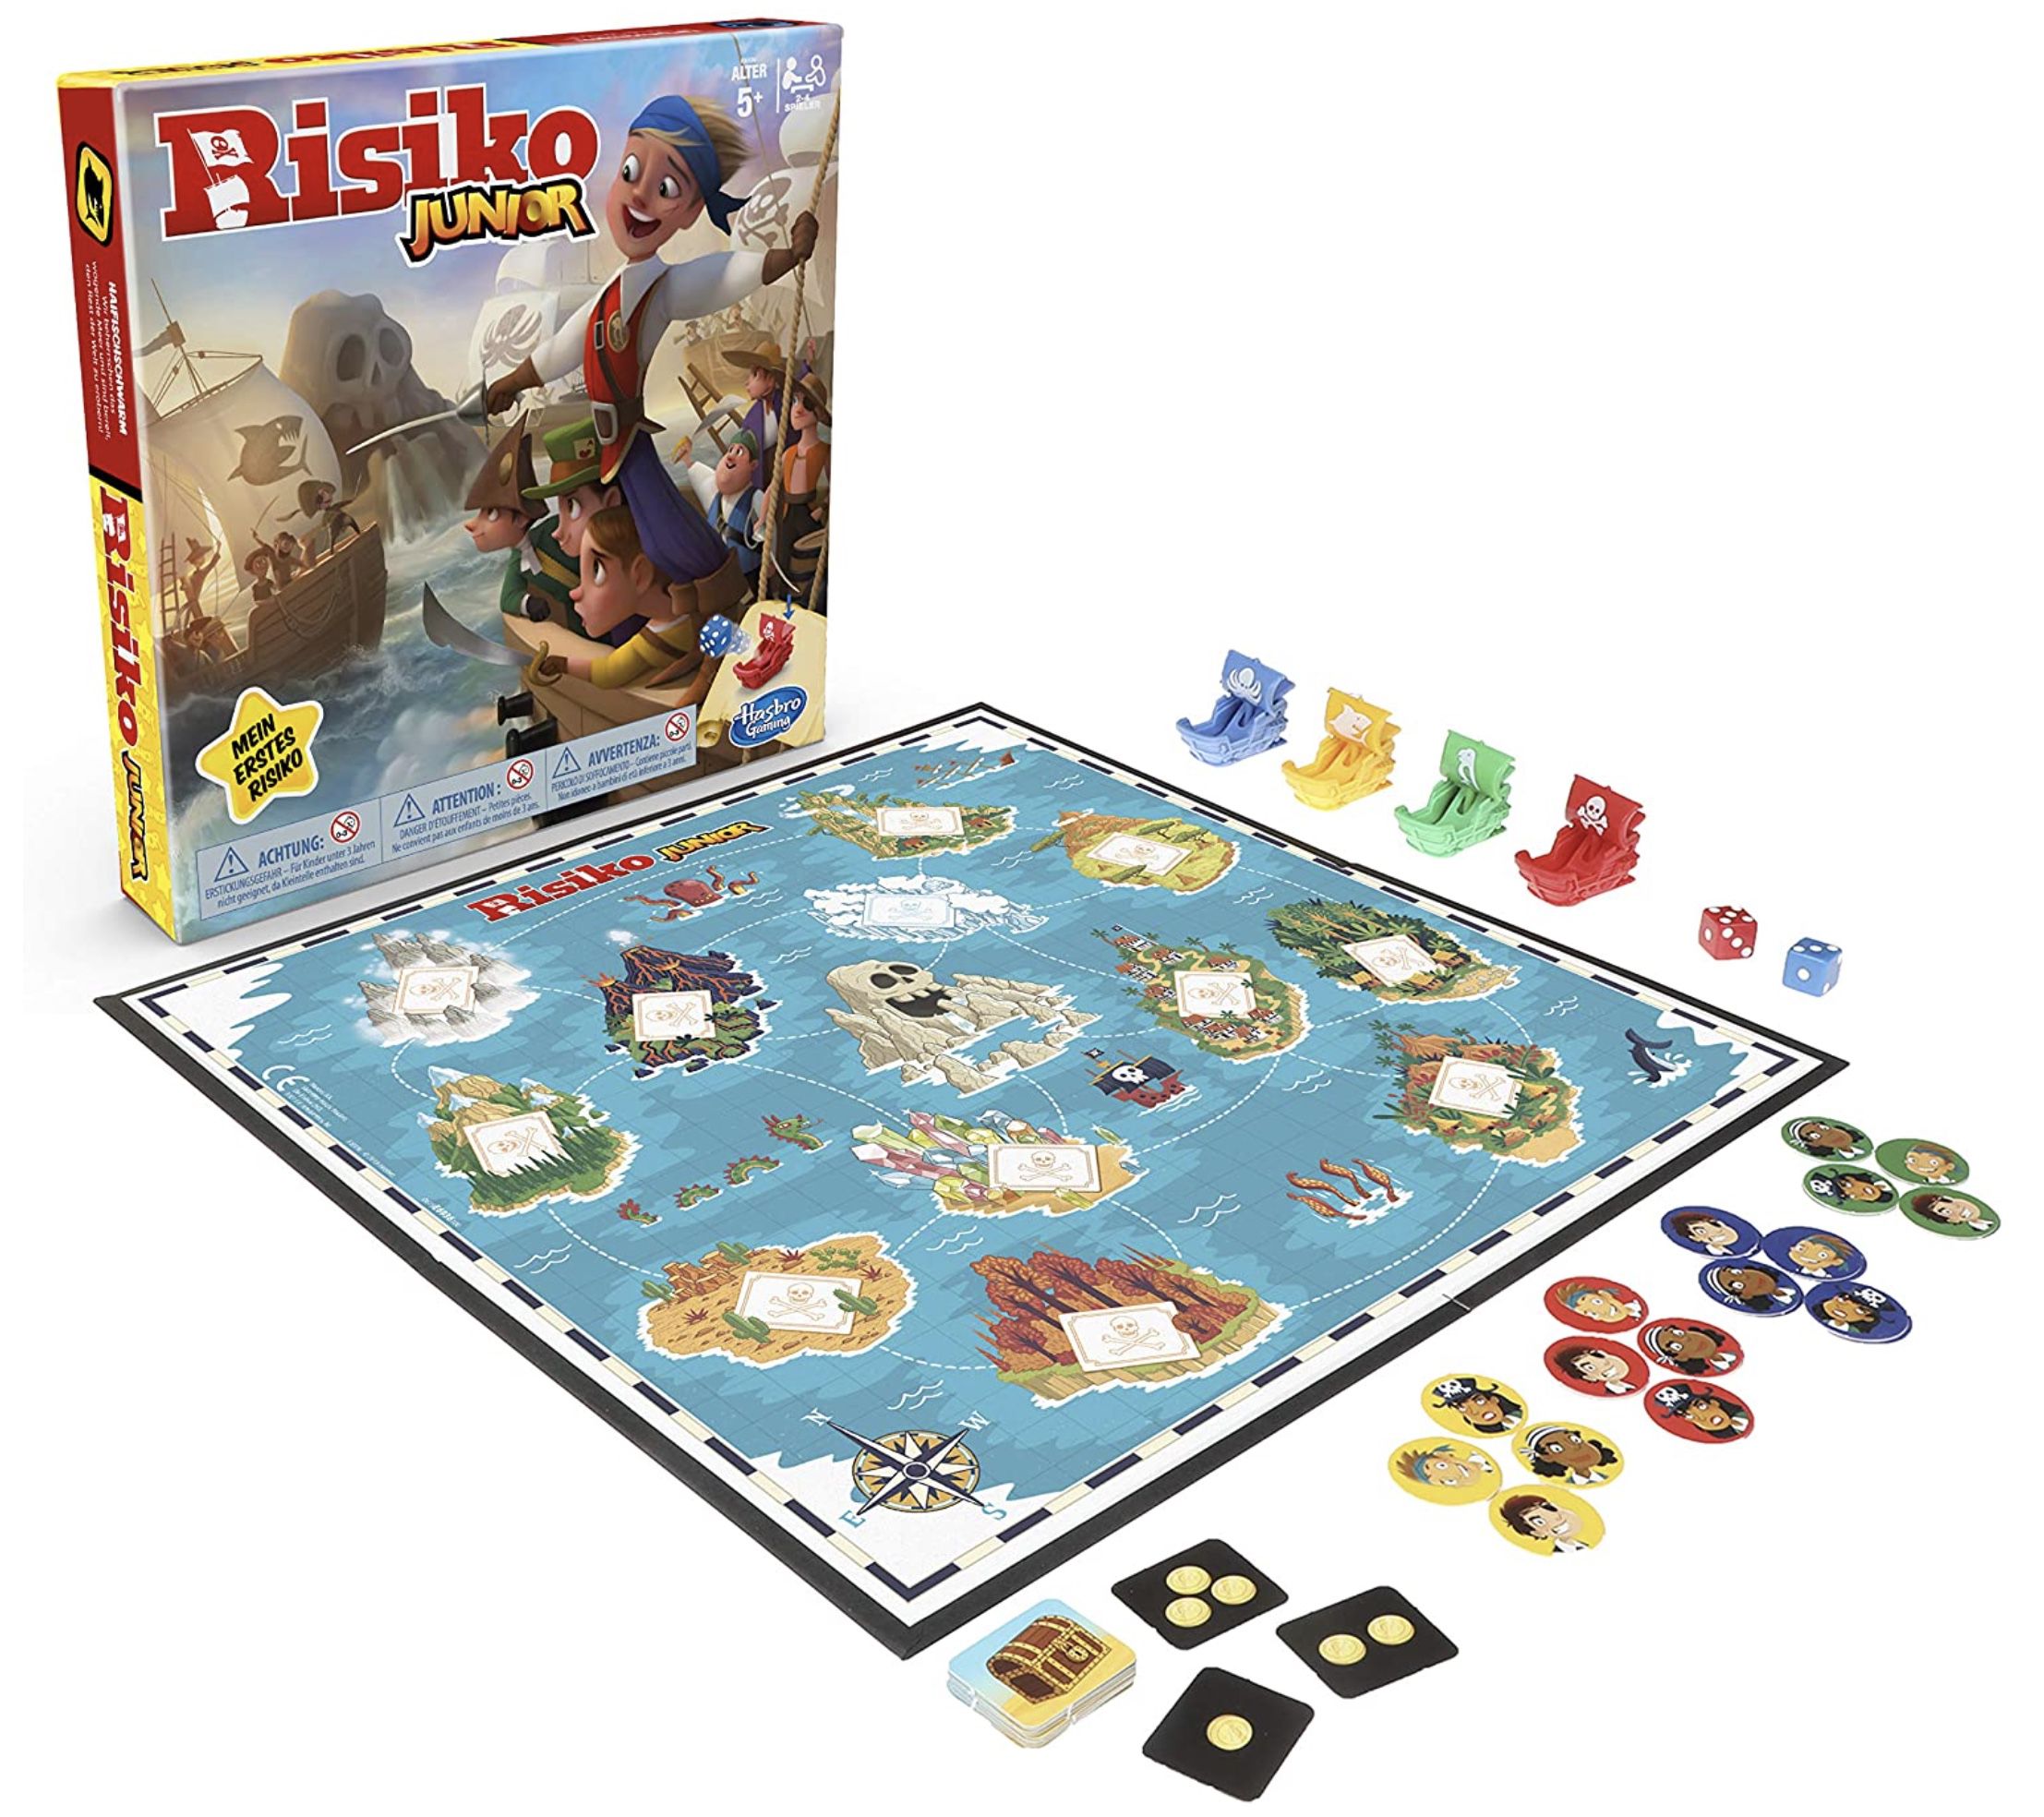 Hasbro Risiko Junior kindergerechtes Strategiespiel für 11,48€ (statt 20€)   Prime